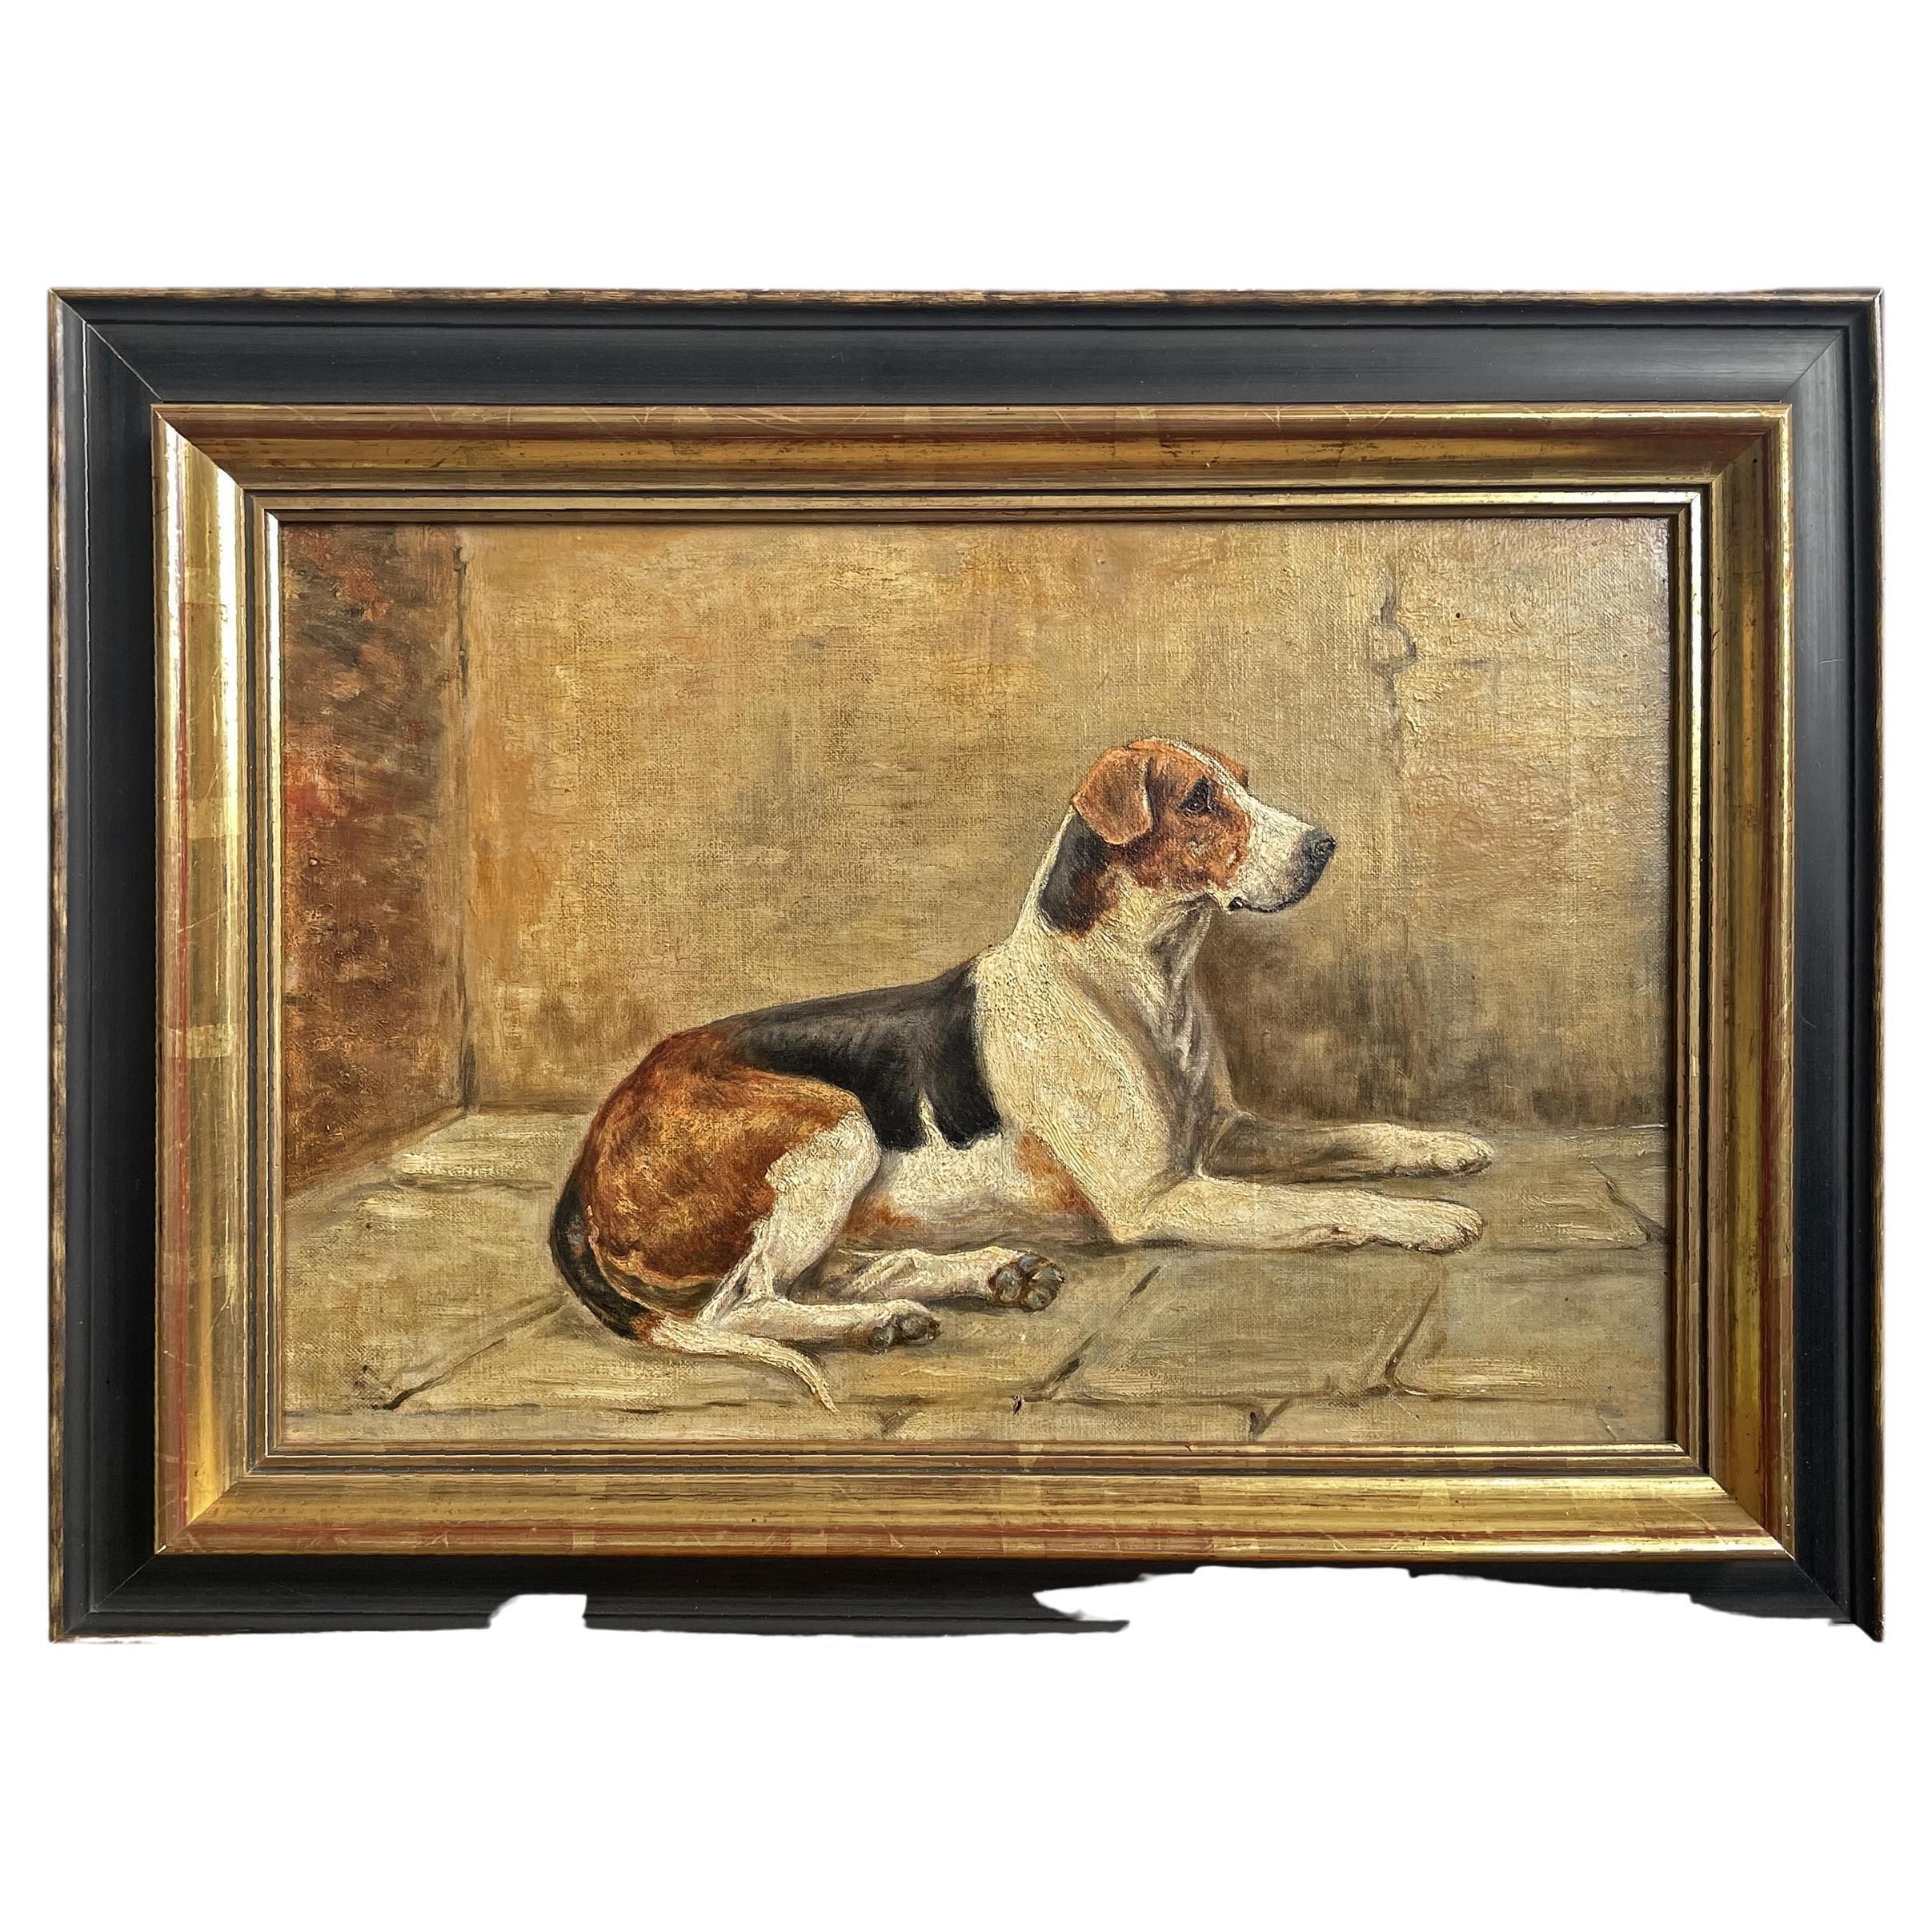 Foxhound

31 x 46 cm - ohne Rahmen
44 x 60 cm - mit Rahmen
Öl auf Leinwand - Ende 19. Jahrhundert

Ölgemälde auf Leinwand, englisch, aus dem späten 19. Jahrhundert, mit der Darstellung eines liegenden Foxhounds.
Die Physiognomie des Tieres ist